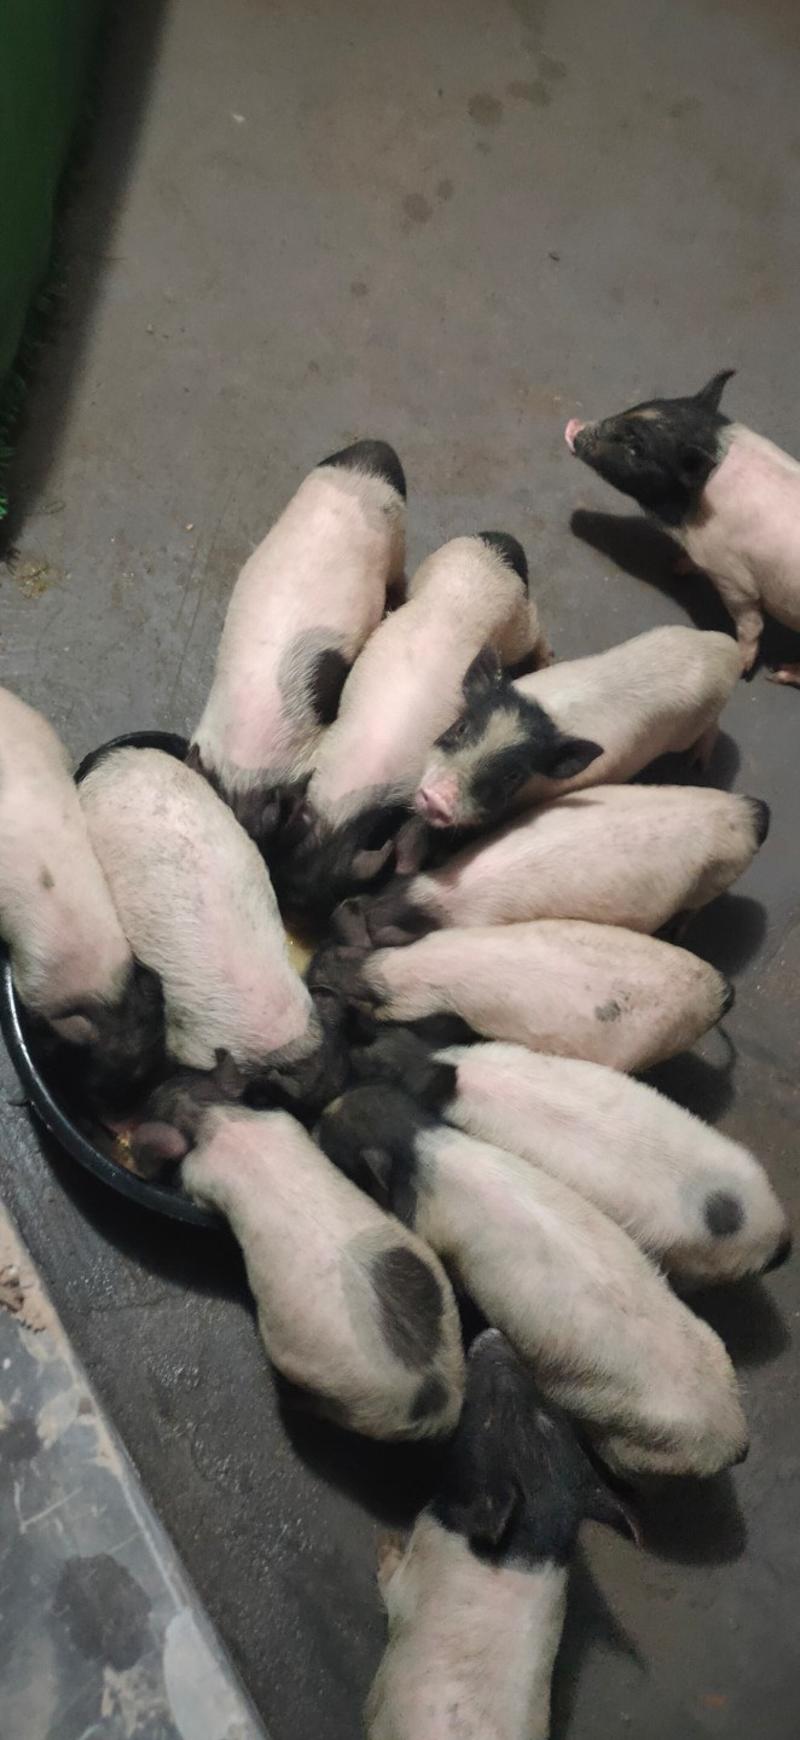 常年出售巴马香猪果园散养巴马香猪藏香猪猪苗种猪阉割商品猪